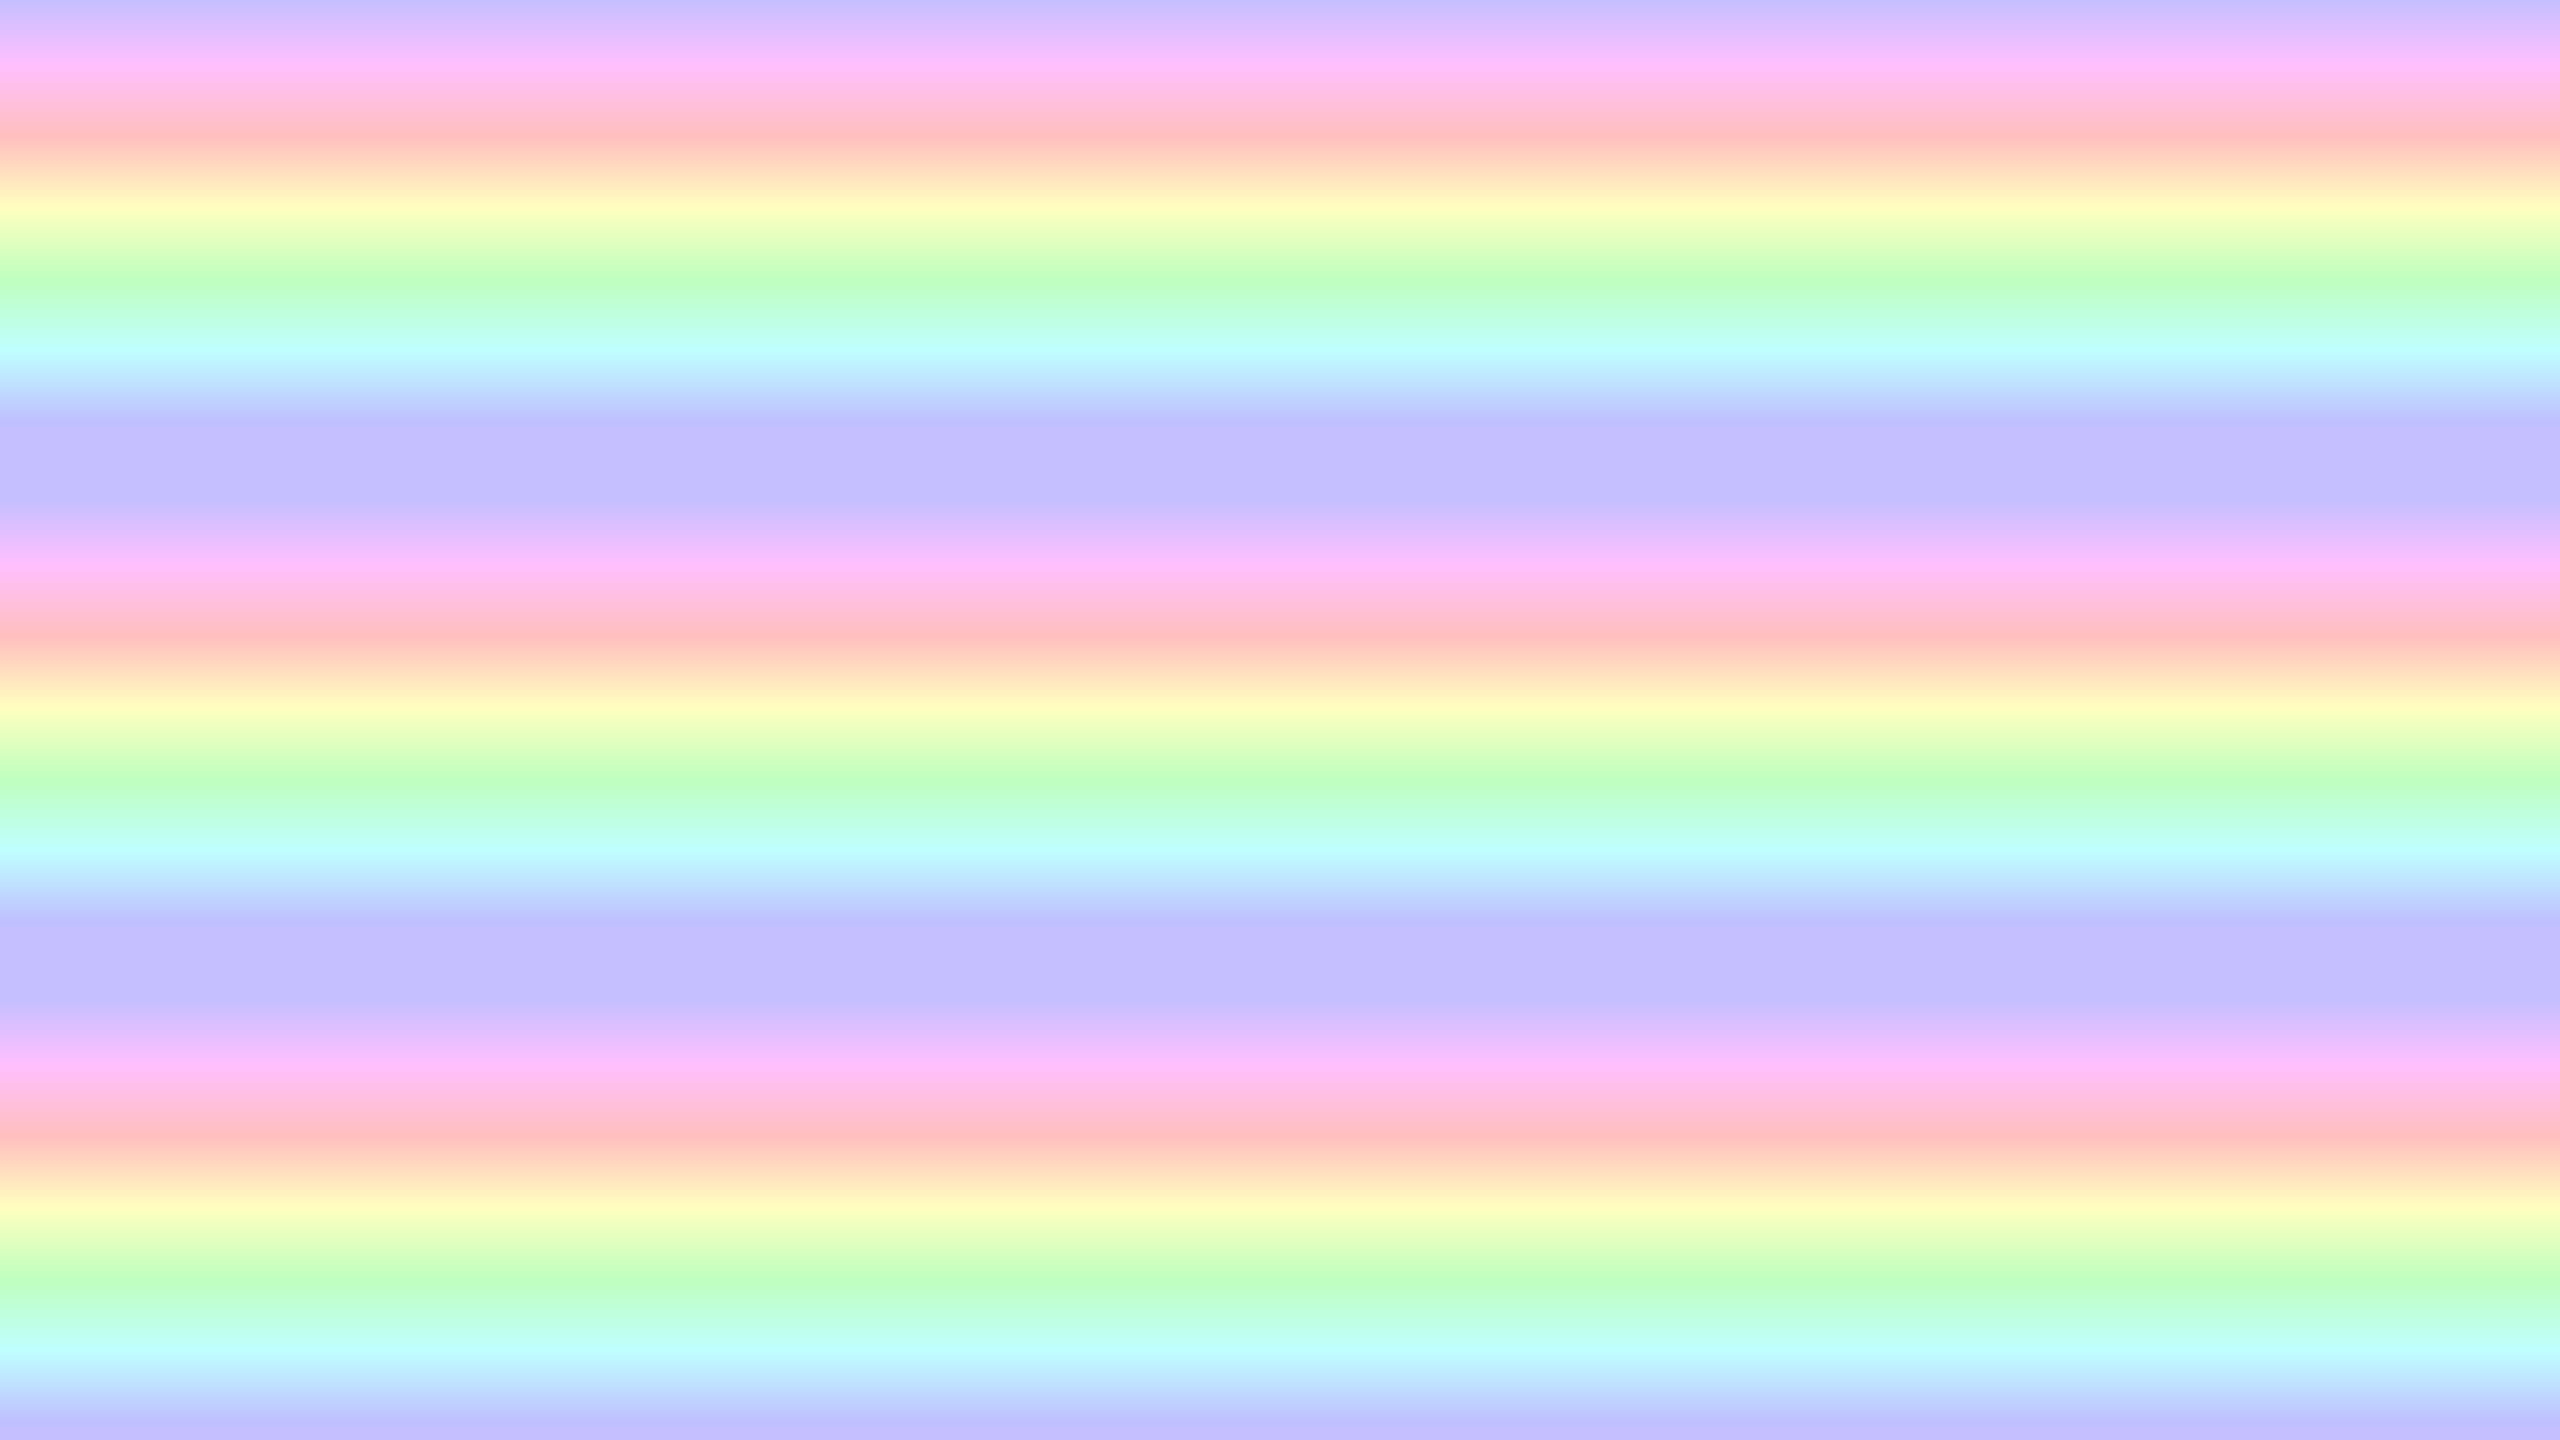 Tumblr Pastel Desktop Wallpapers - Top Free Tumblr Pastel Desktop ...